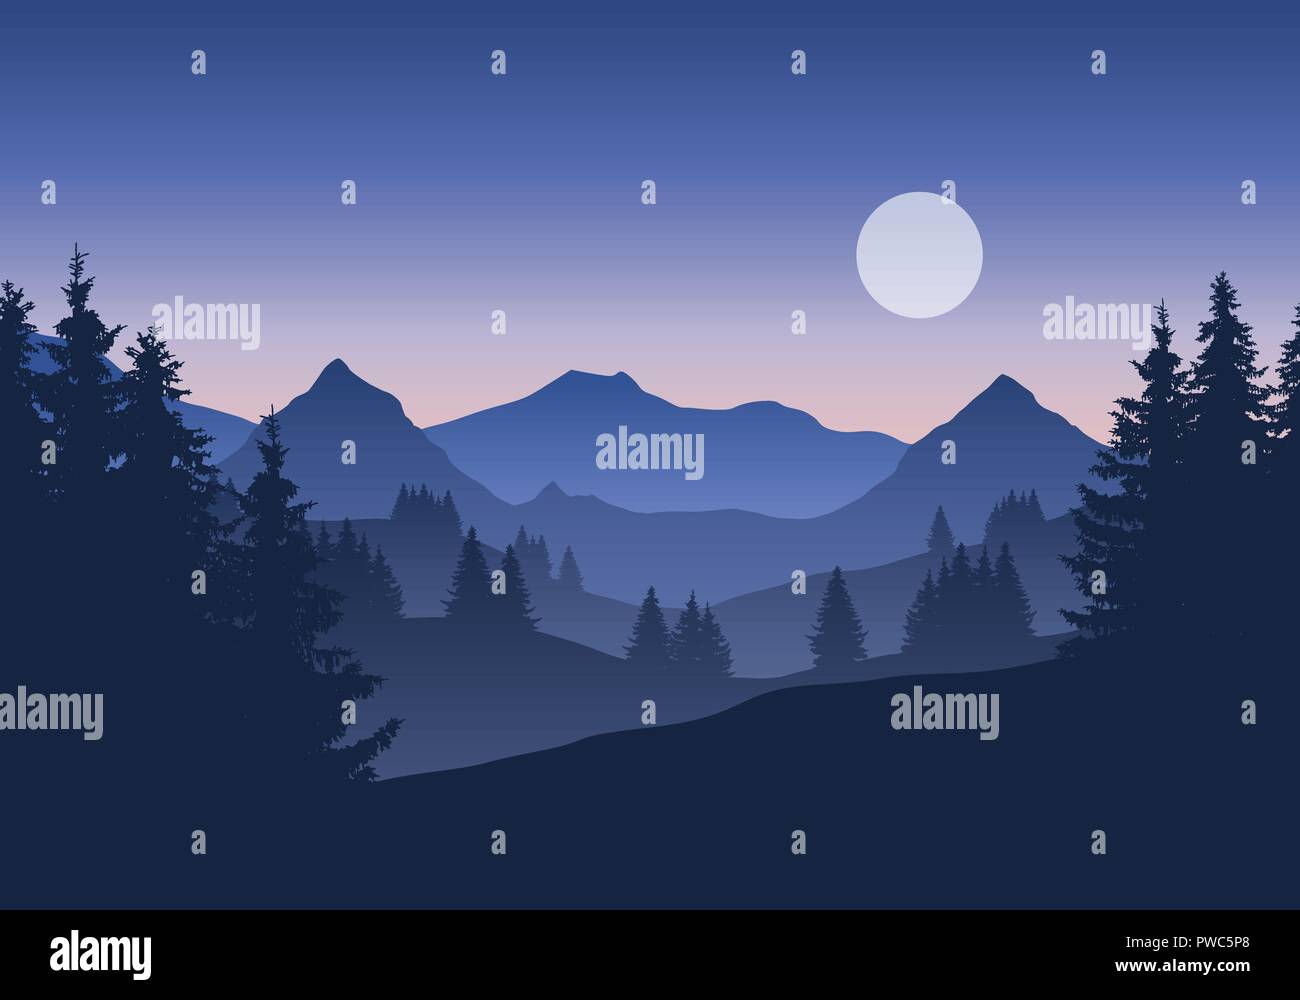 Abbildung: Berglandschaft mit Wald unter blauen Morgen oder Abend Himmel mit Monden, Sonnenaufgang oder Sonnenuntergang-Vektor Stock Vektor